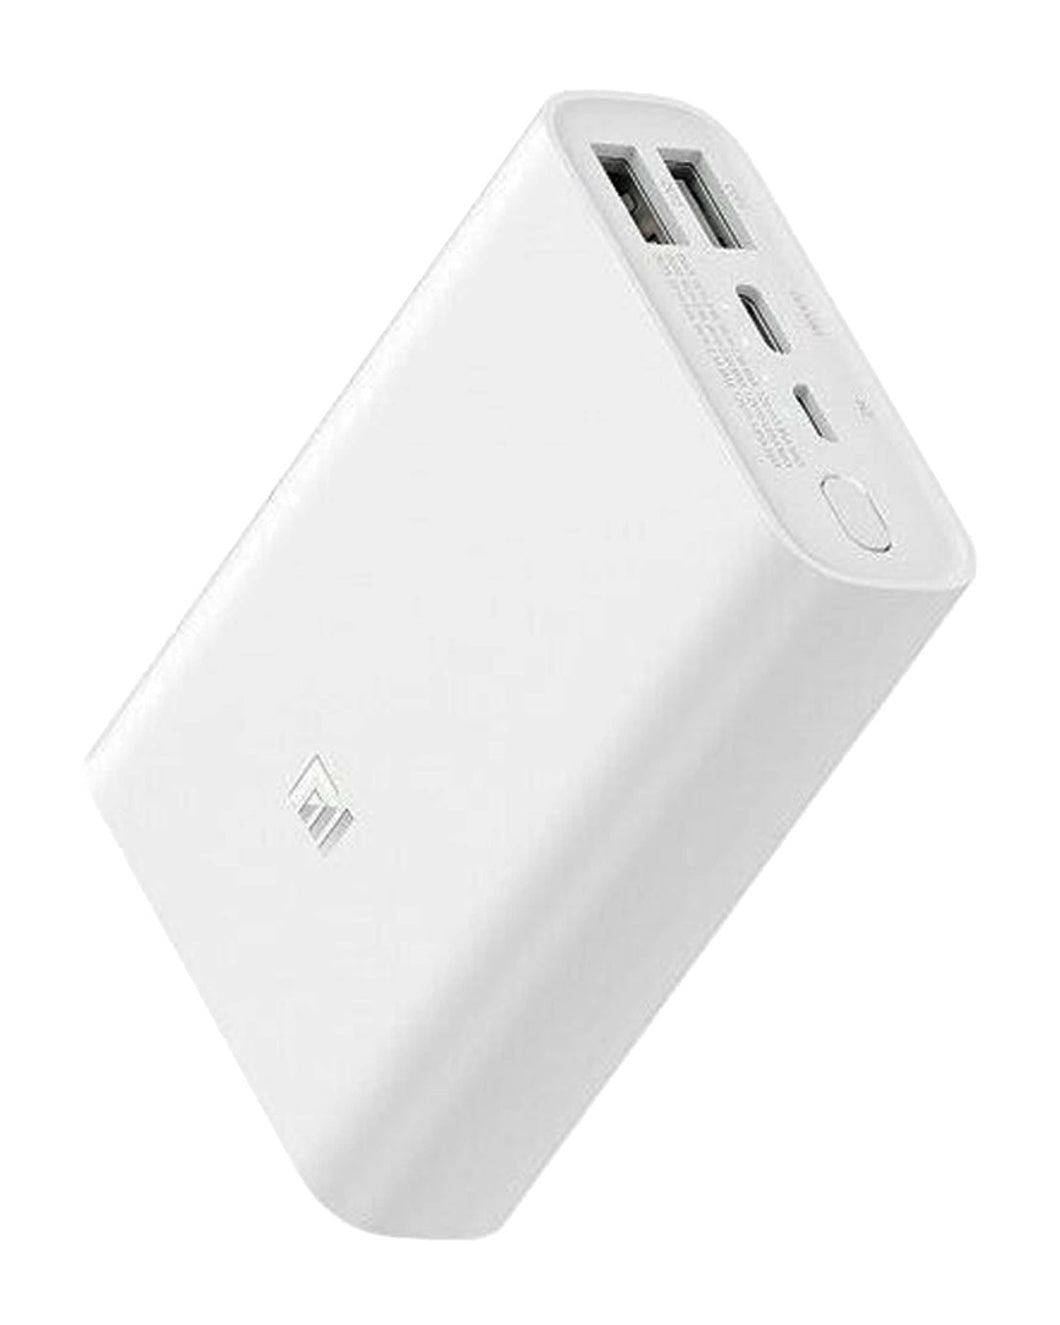 Batería Externa Xiaomi Mi Power Bank 3 Ultra Compact